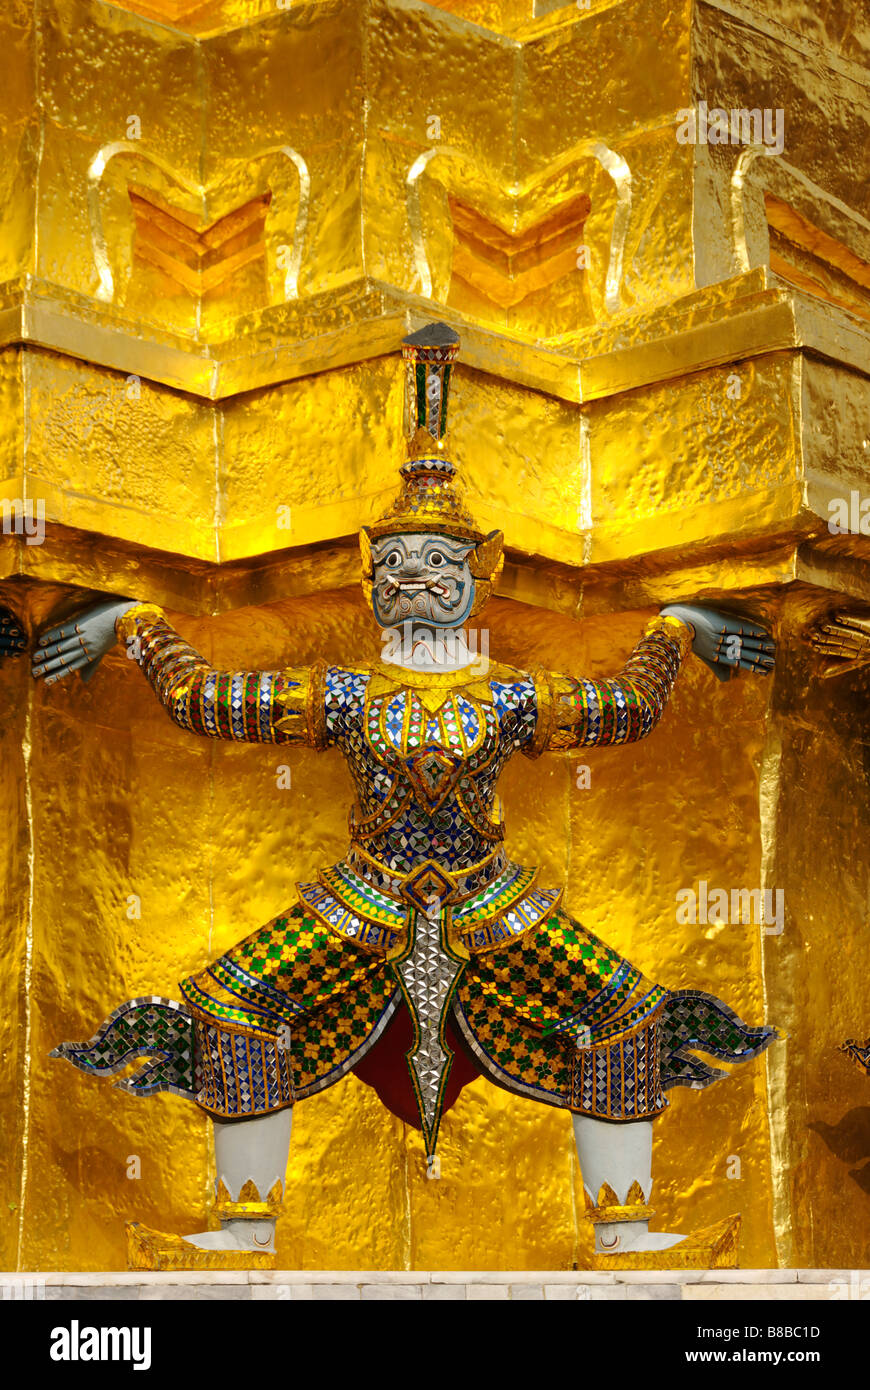 Dans le démon singe temple bouddhiste historique motifs de Wat Phra Kaew et le Grand Palais dans le centre de Bangkok en Thaïlande Banque D'Images